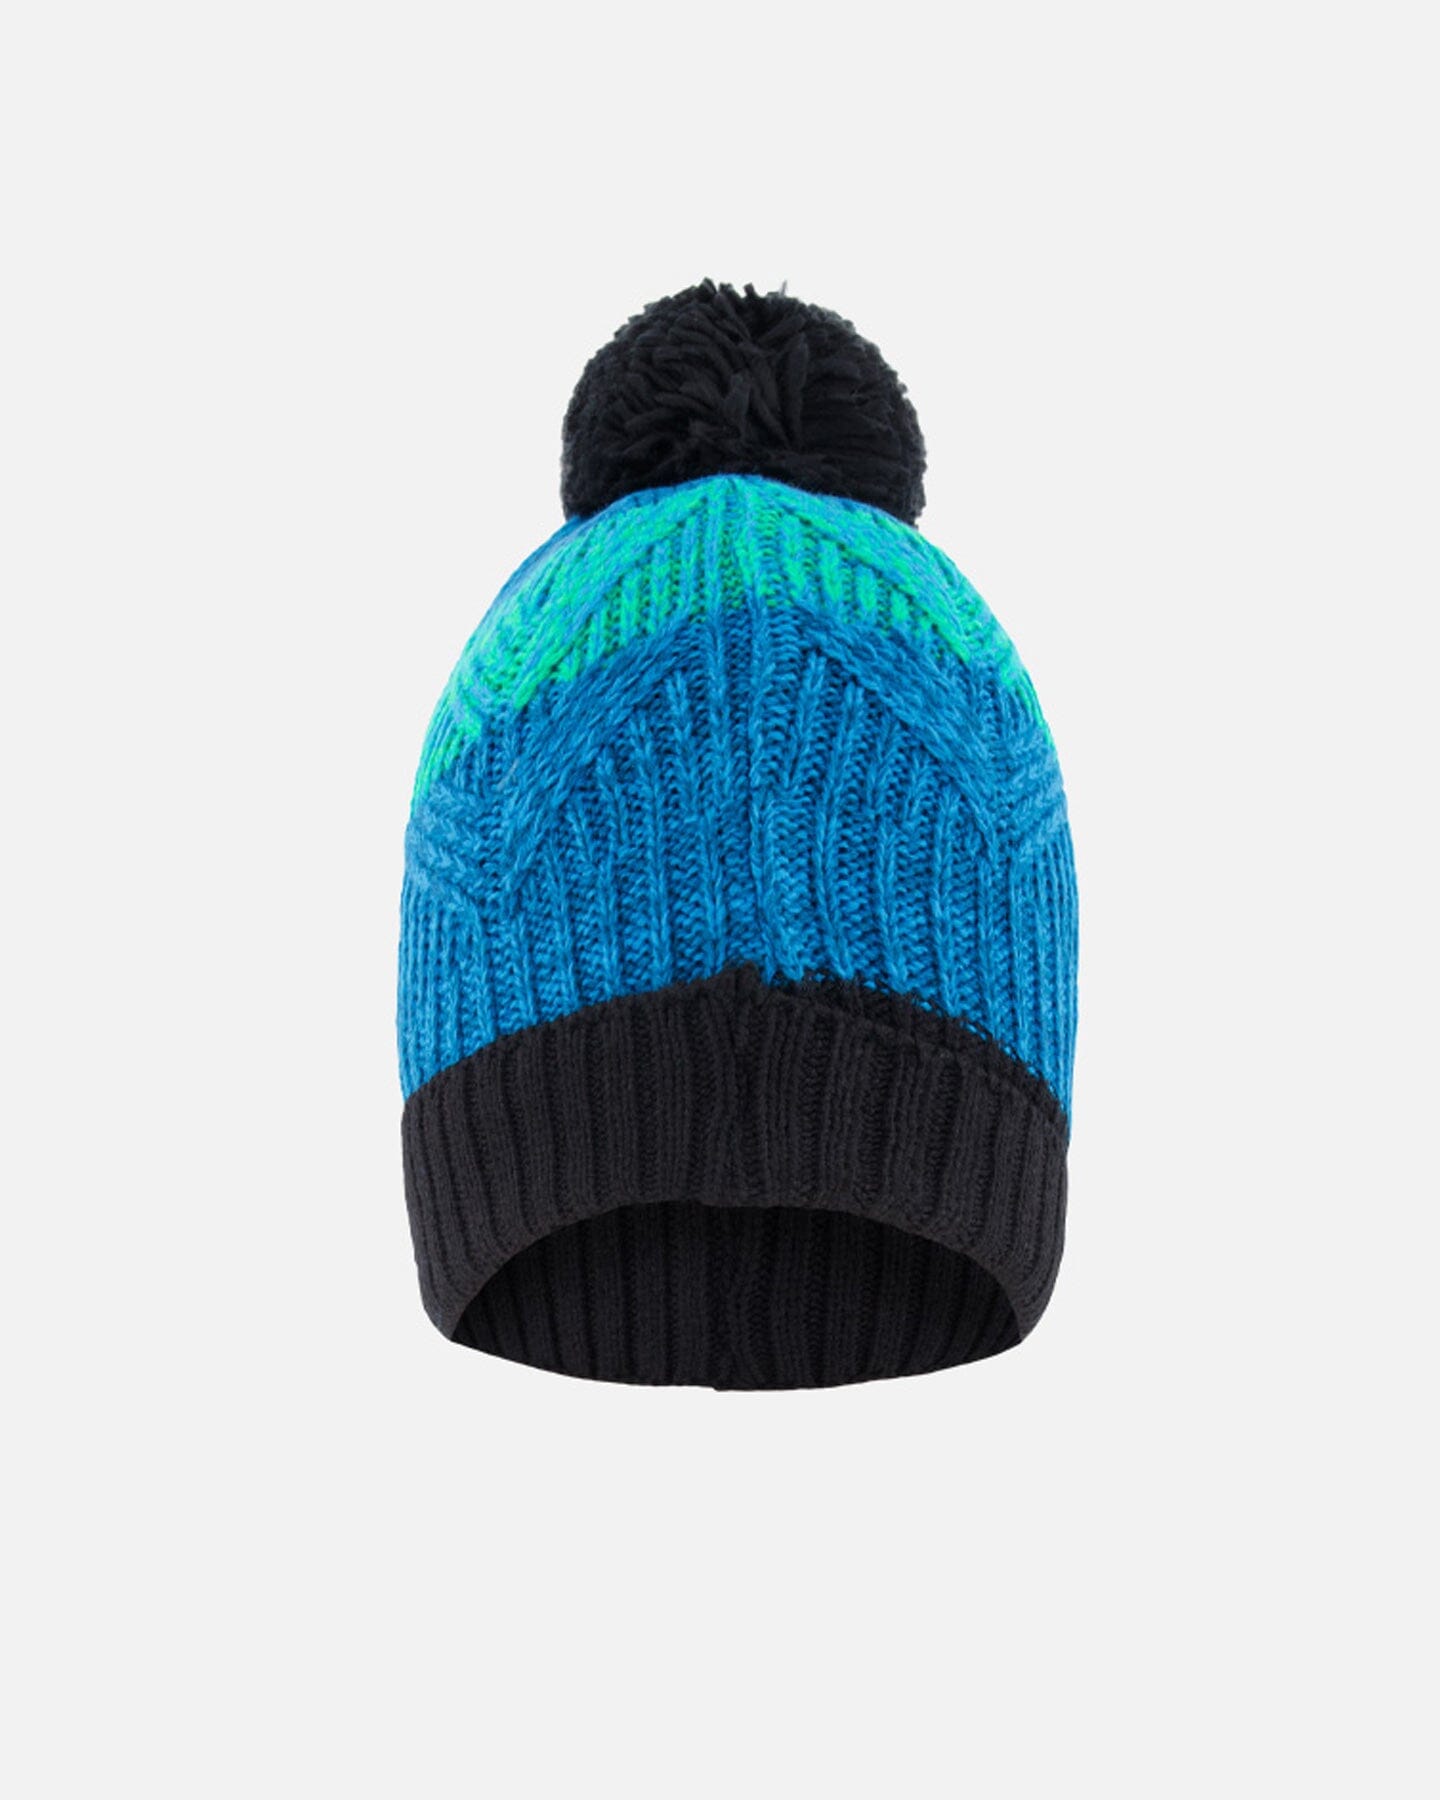 Knit Hat Green And Blue Winter Accessories Deux par Deux 